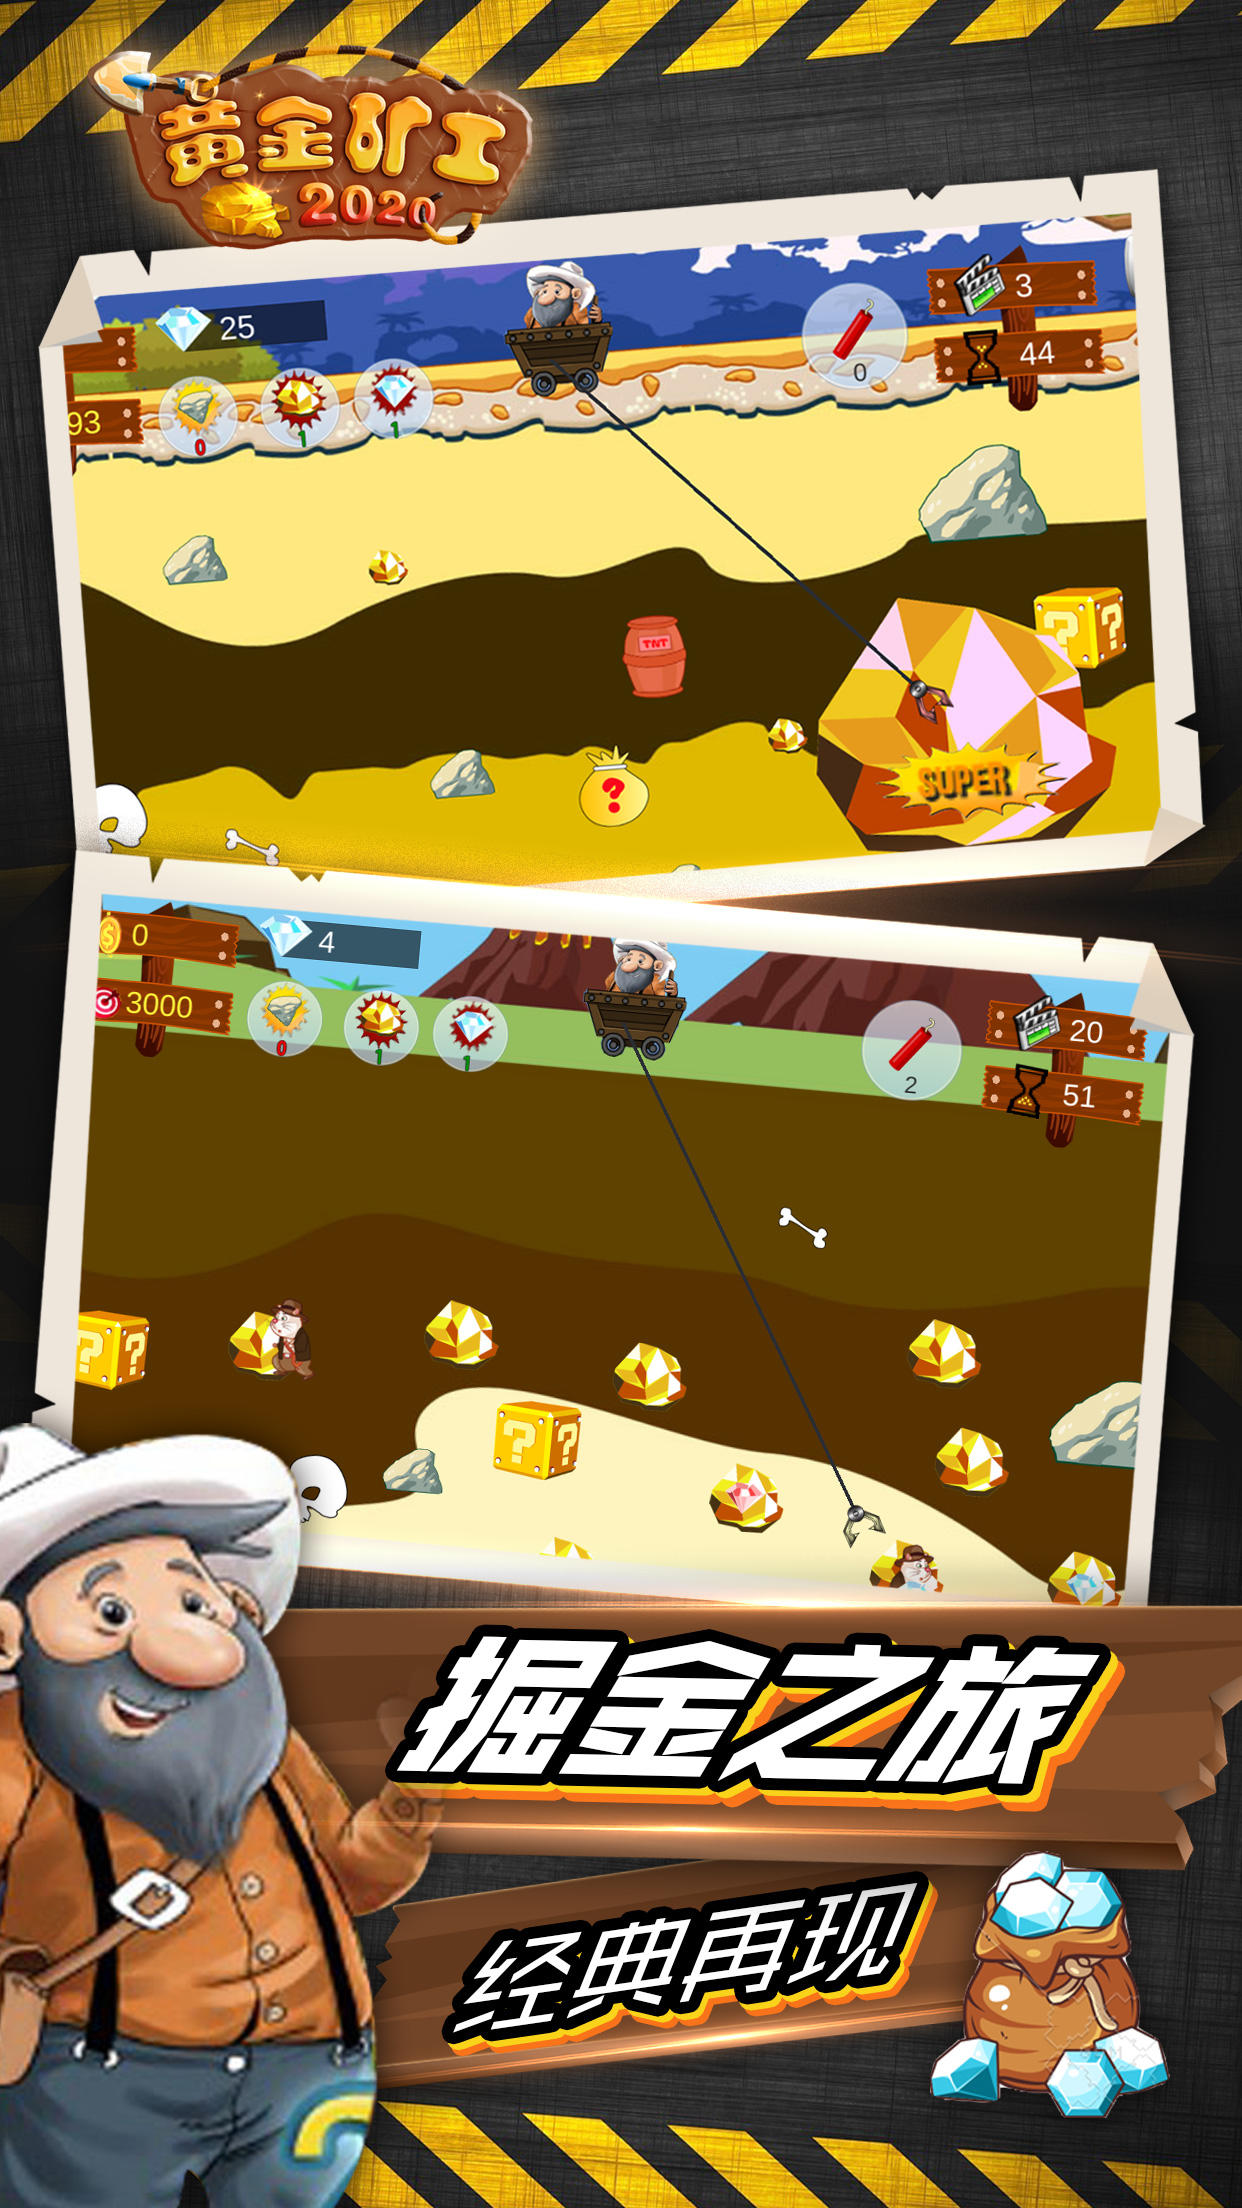 Screenshot 1 of Minero de oro Edición 2020 